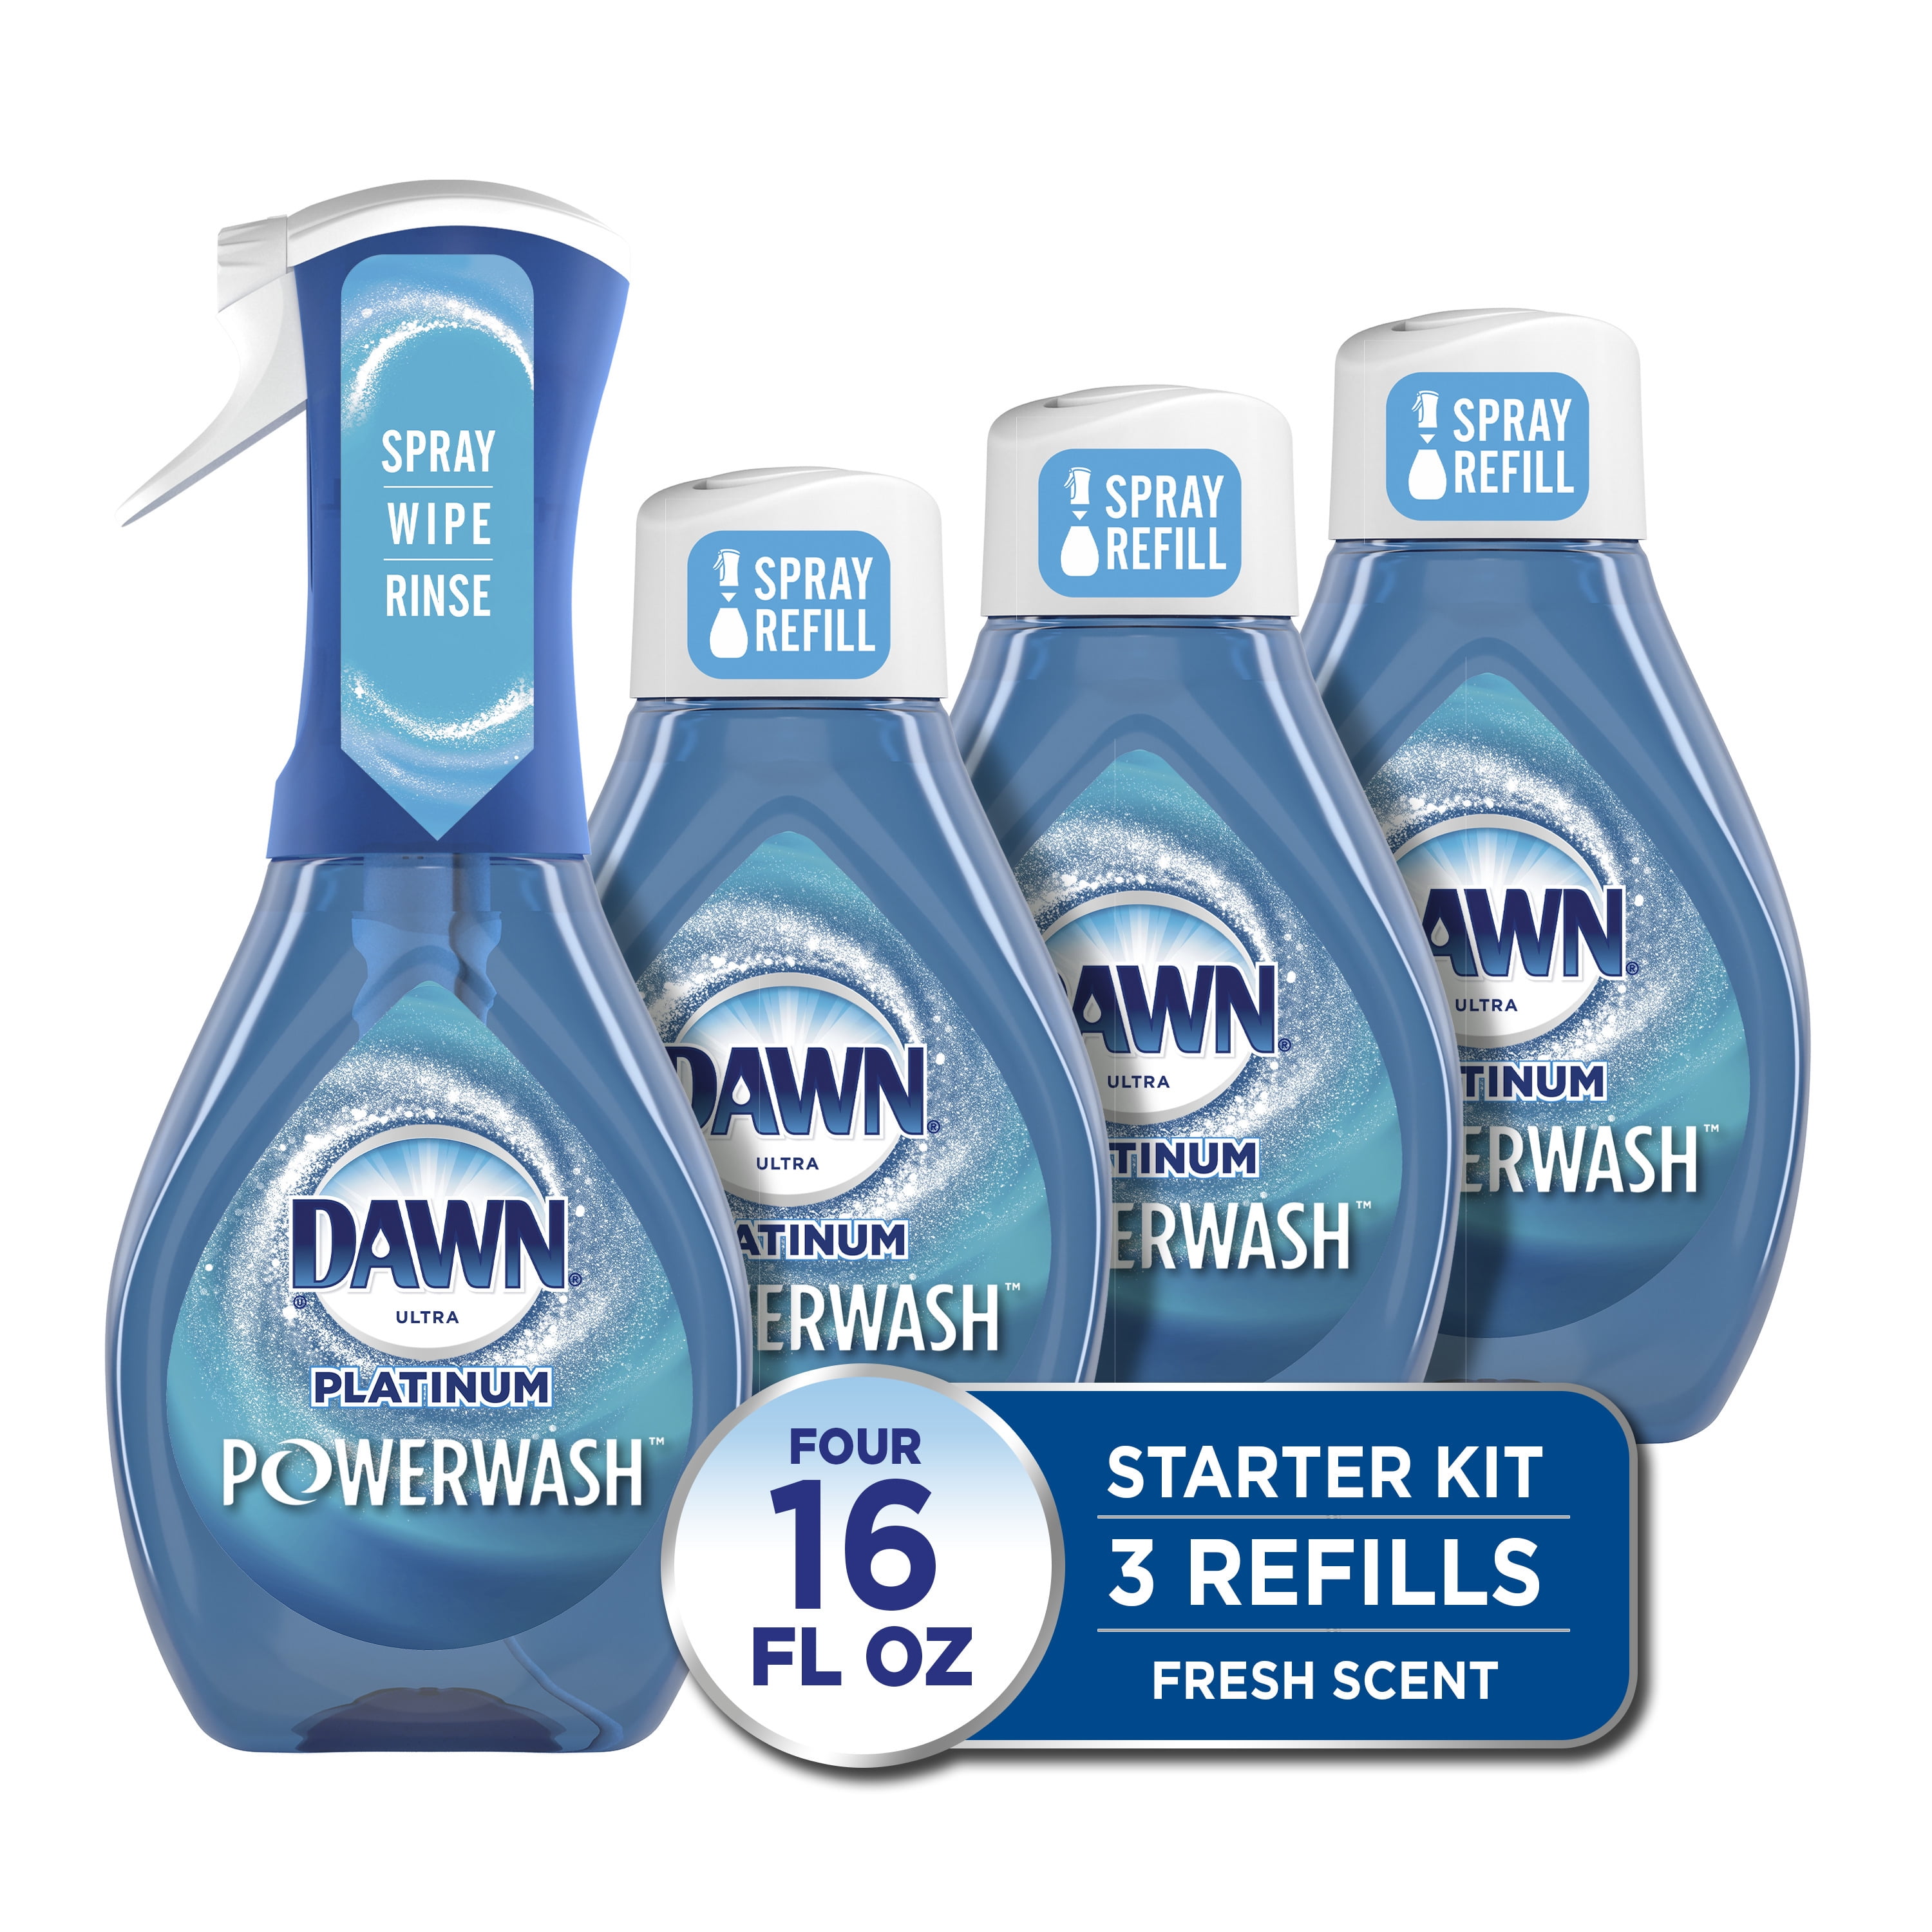 Dawn Powerwash Dish Spray - 16 oz Bottle - ULINE - Qty of 6 - S-25019